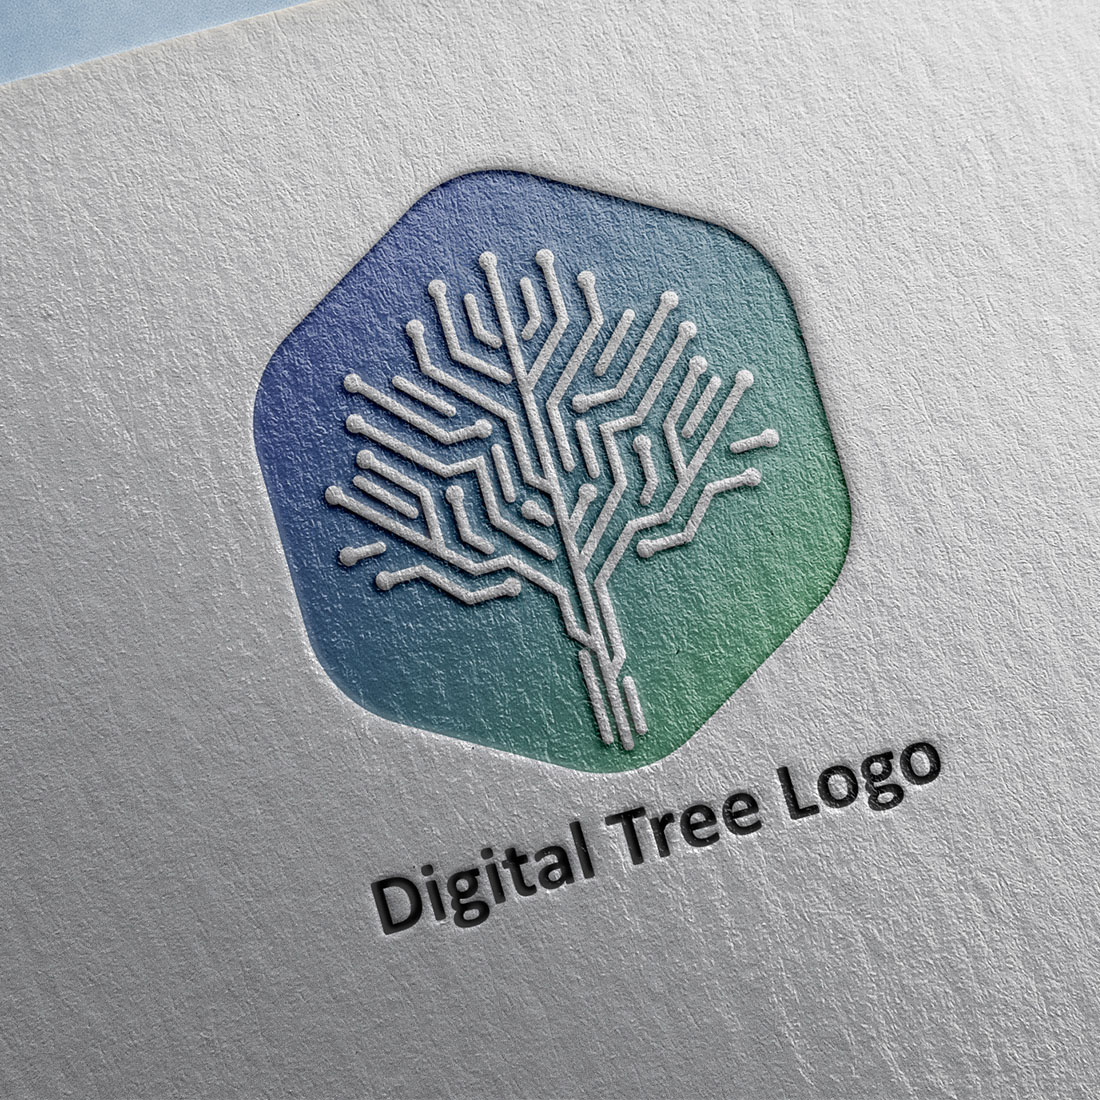 Digital Tree Logo mockup preview.